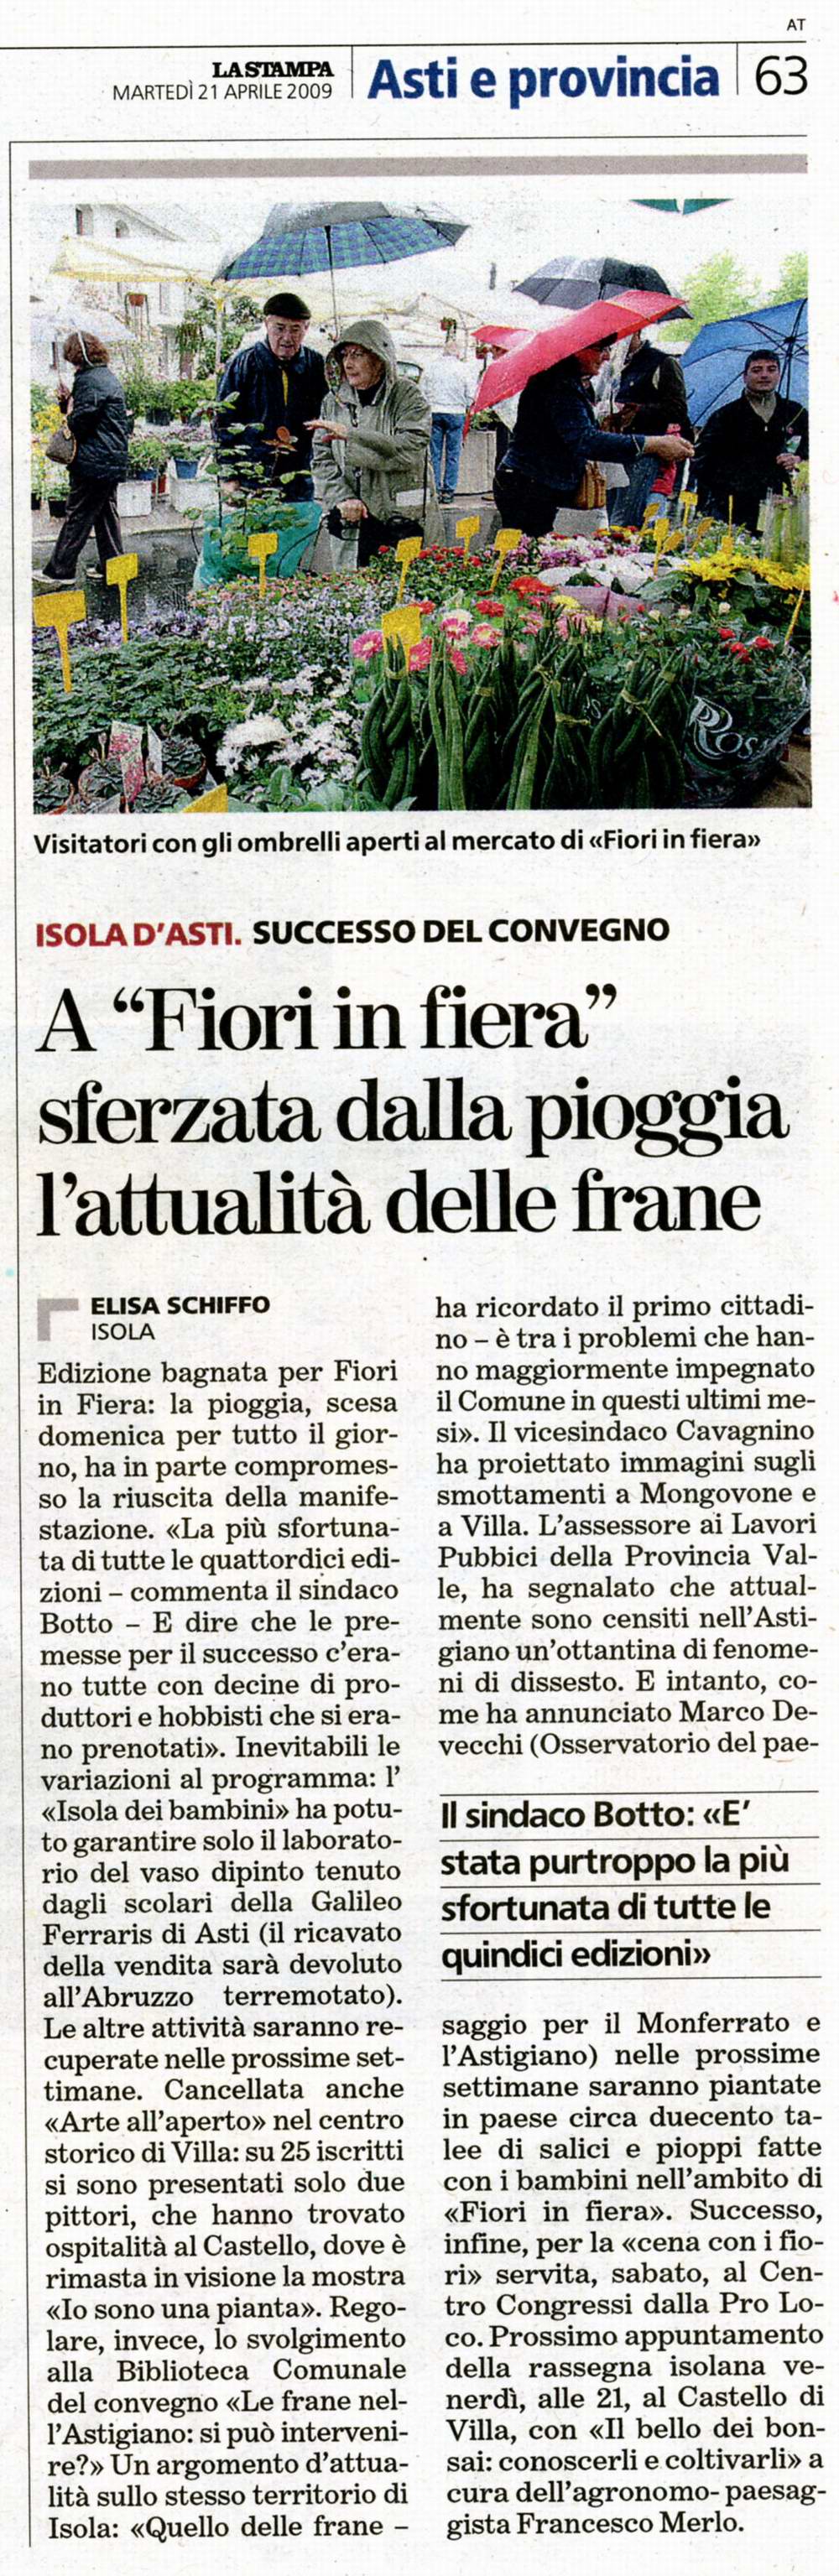 Rassegna stampa - Fiori in Fiera - La Stampa (Martedì 21 aprile 2009)